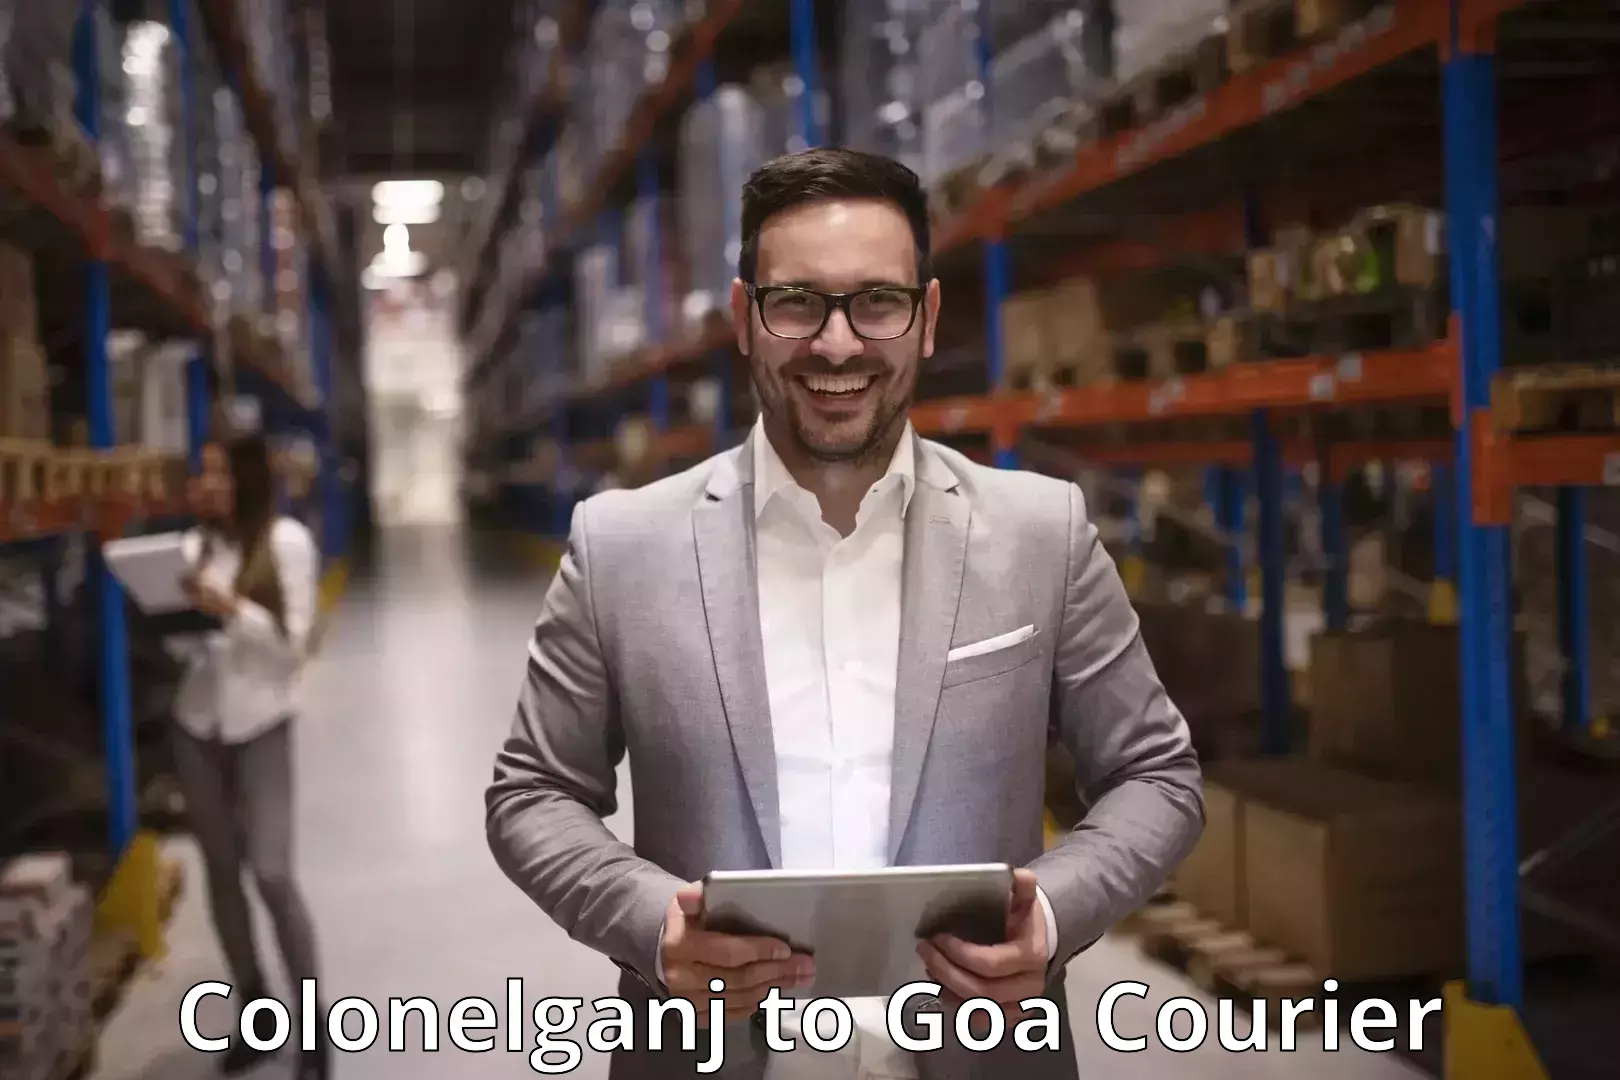 Advanced delivery network Colonelganj to Goa